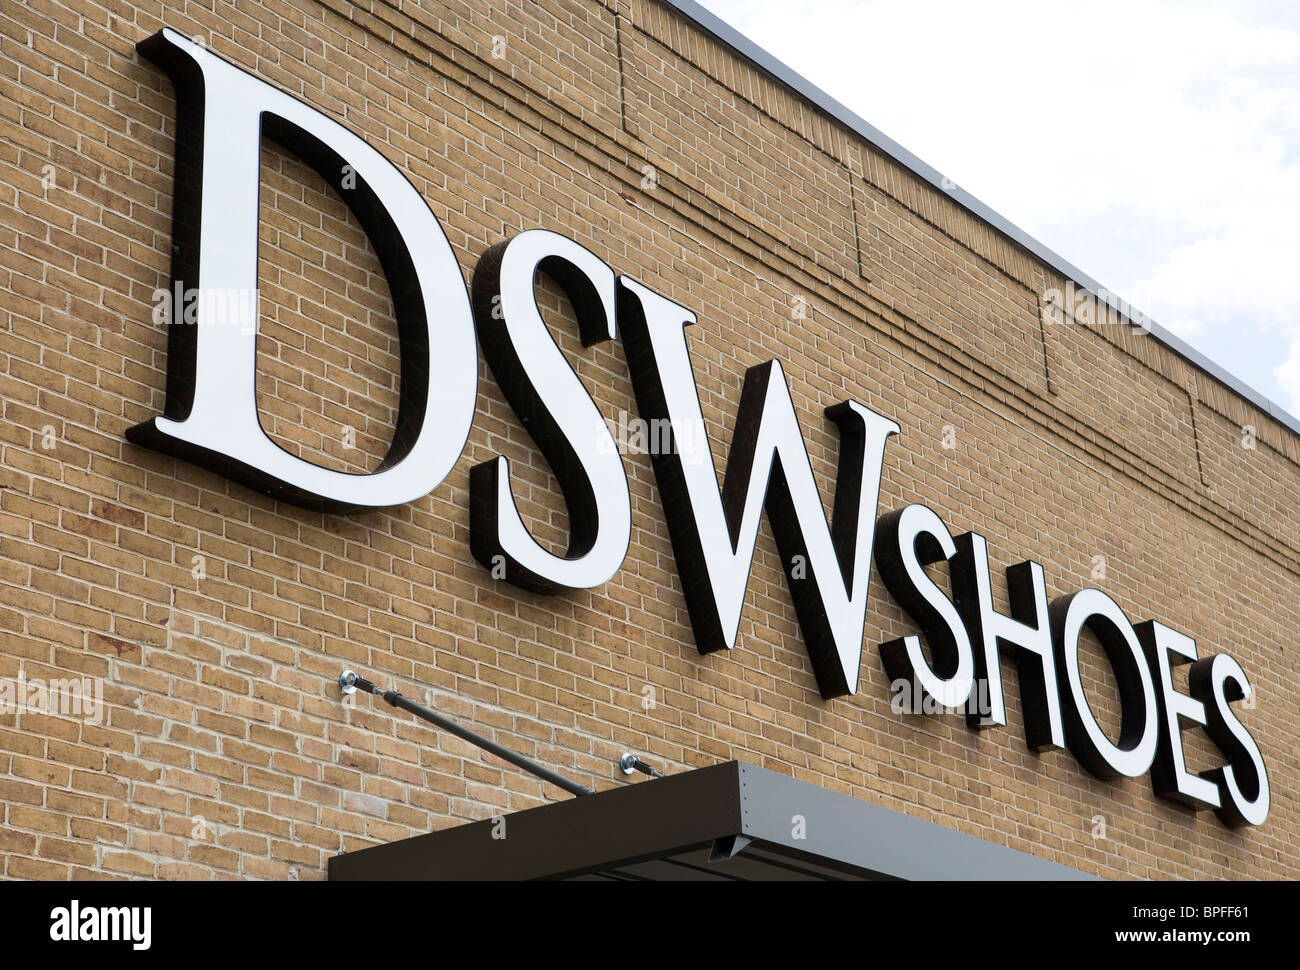 Una tienda de zapatos DSW en los suburbios de Maryland Fotografía de stock  - Alamy